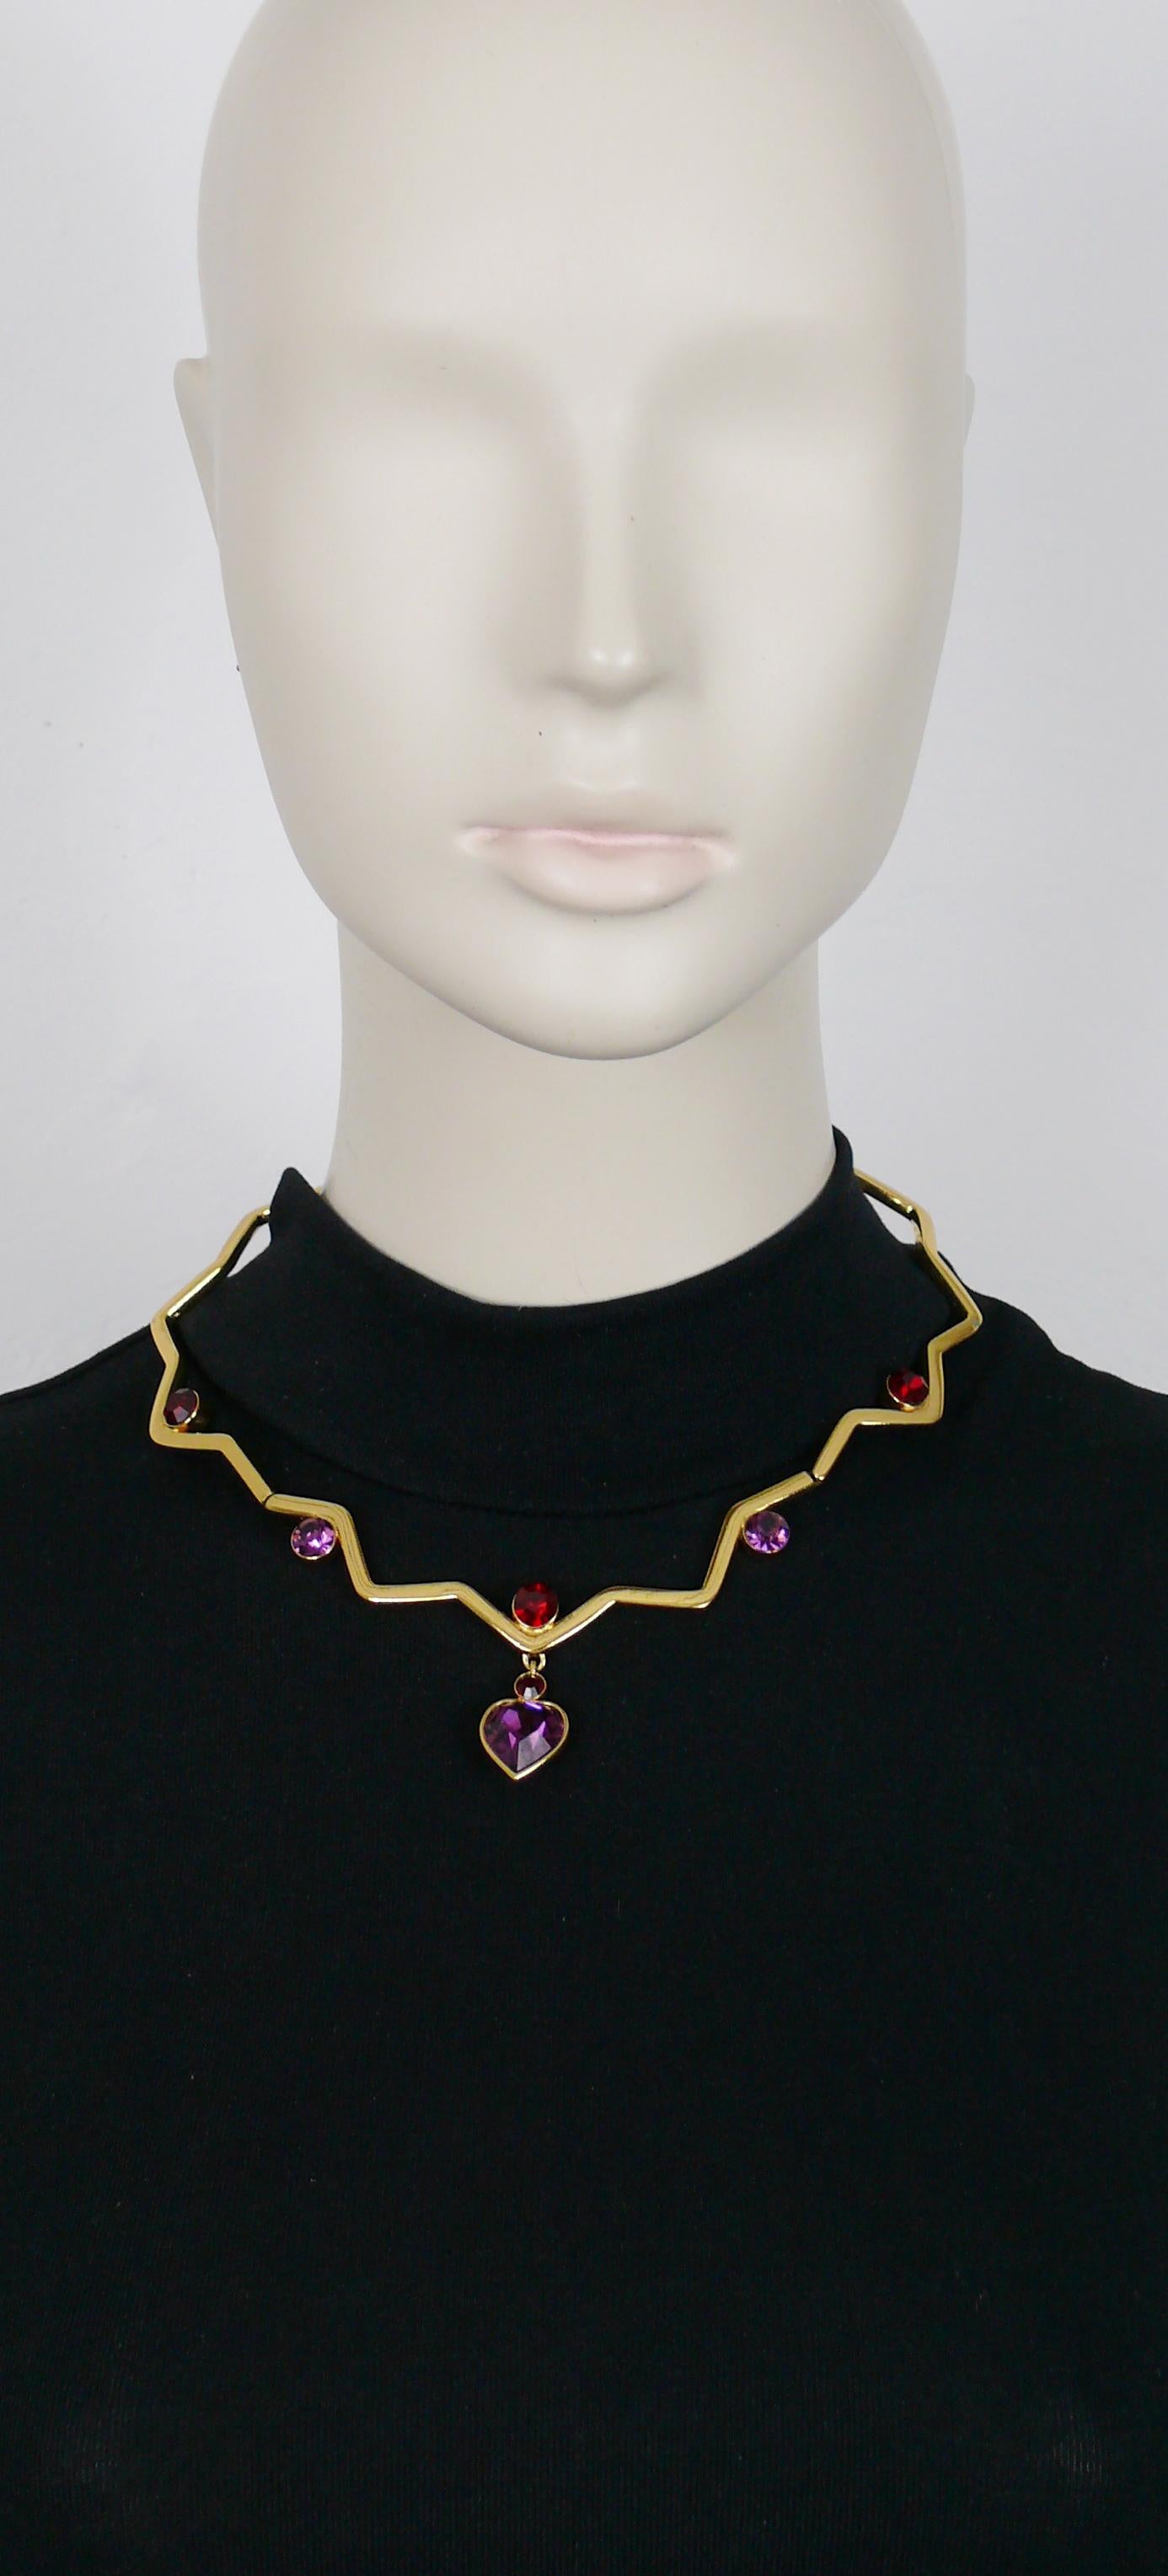 YVES SAINT LAURENT Vintage-Halskette in goldfarbenem, gegliedertem Zickzack-Design, verziert mit roten und violetten Kristallen, mit einem violetten herzförmigen Kristallanhänger.

Verschluss mit T-Bügel und Herz.

Geprägtes YSL Made in